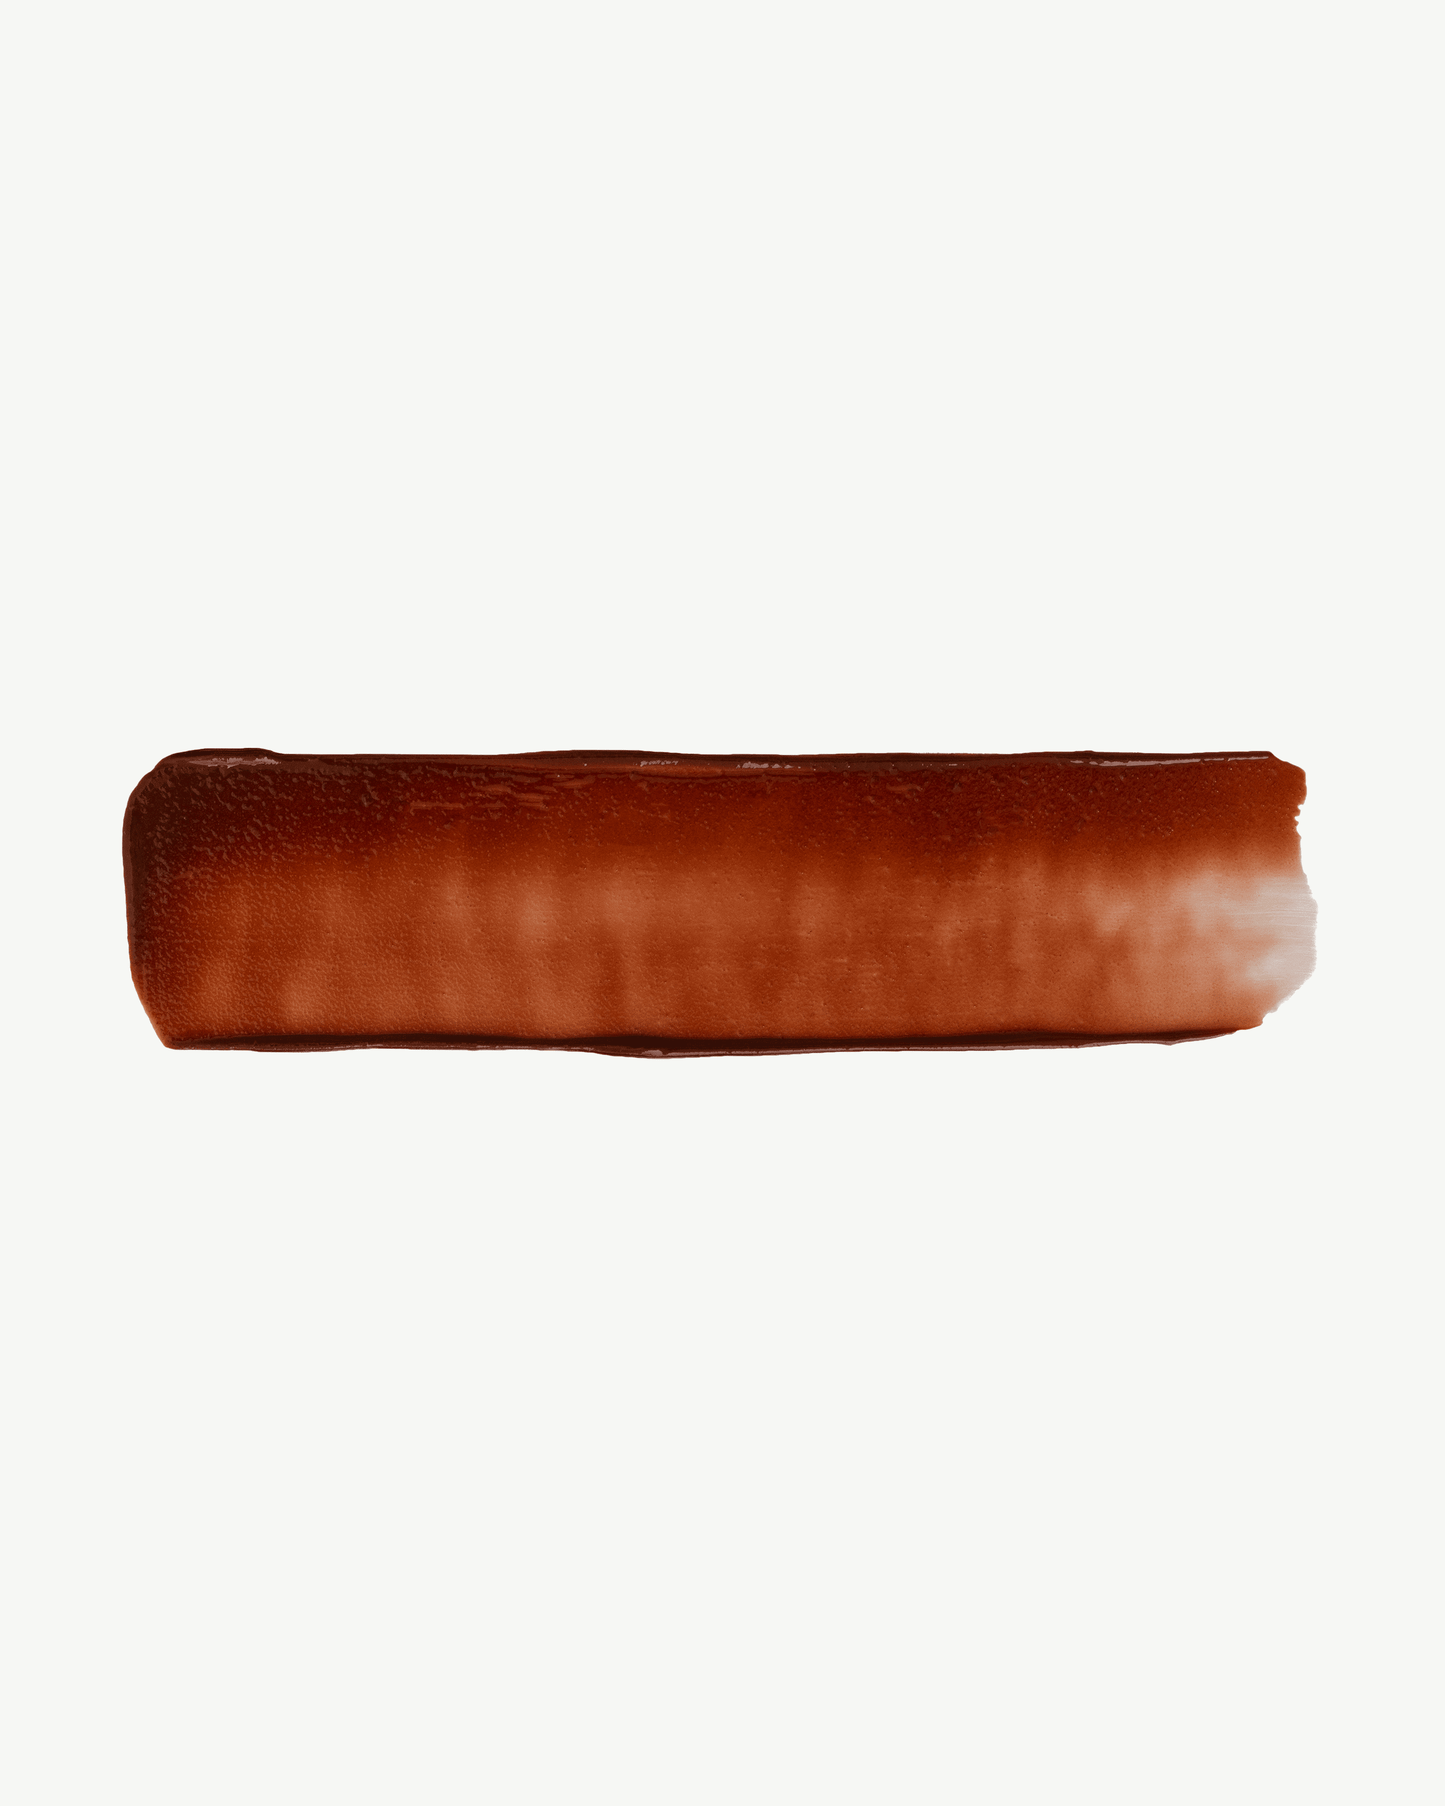 Rewind (neutral brown)